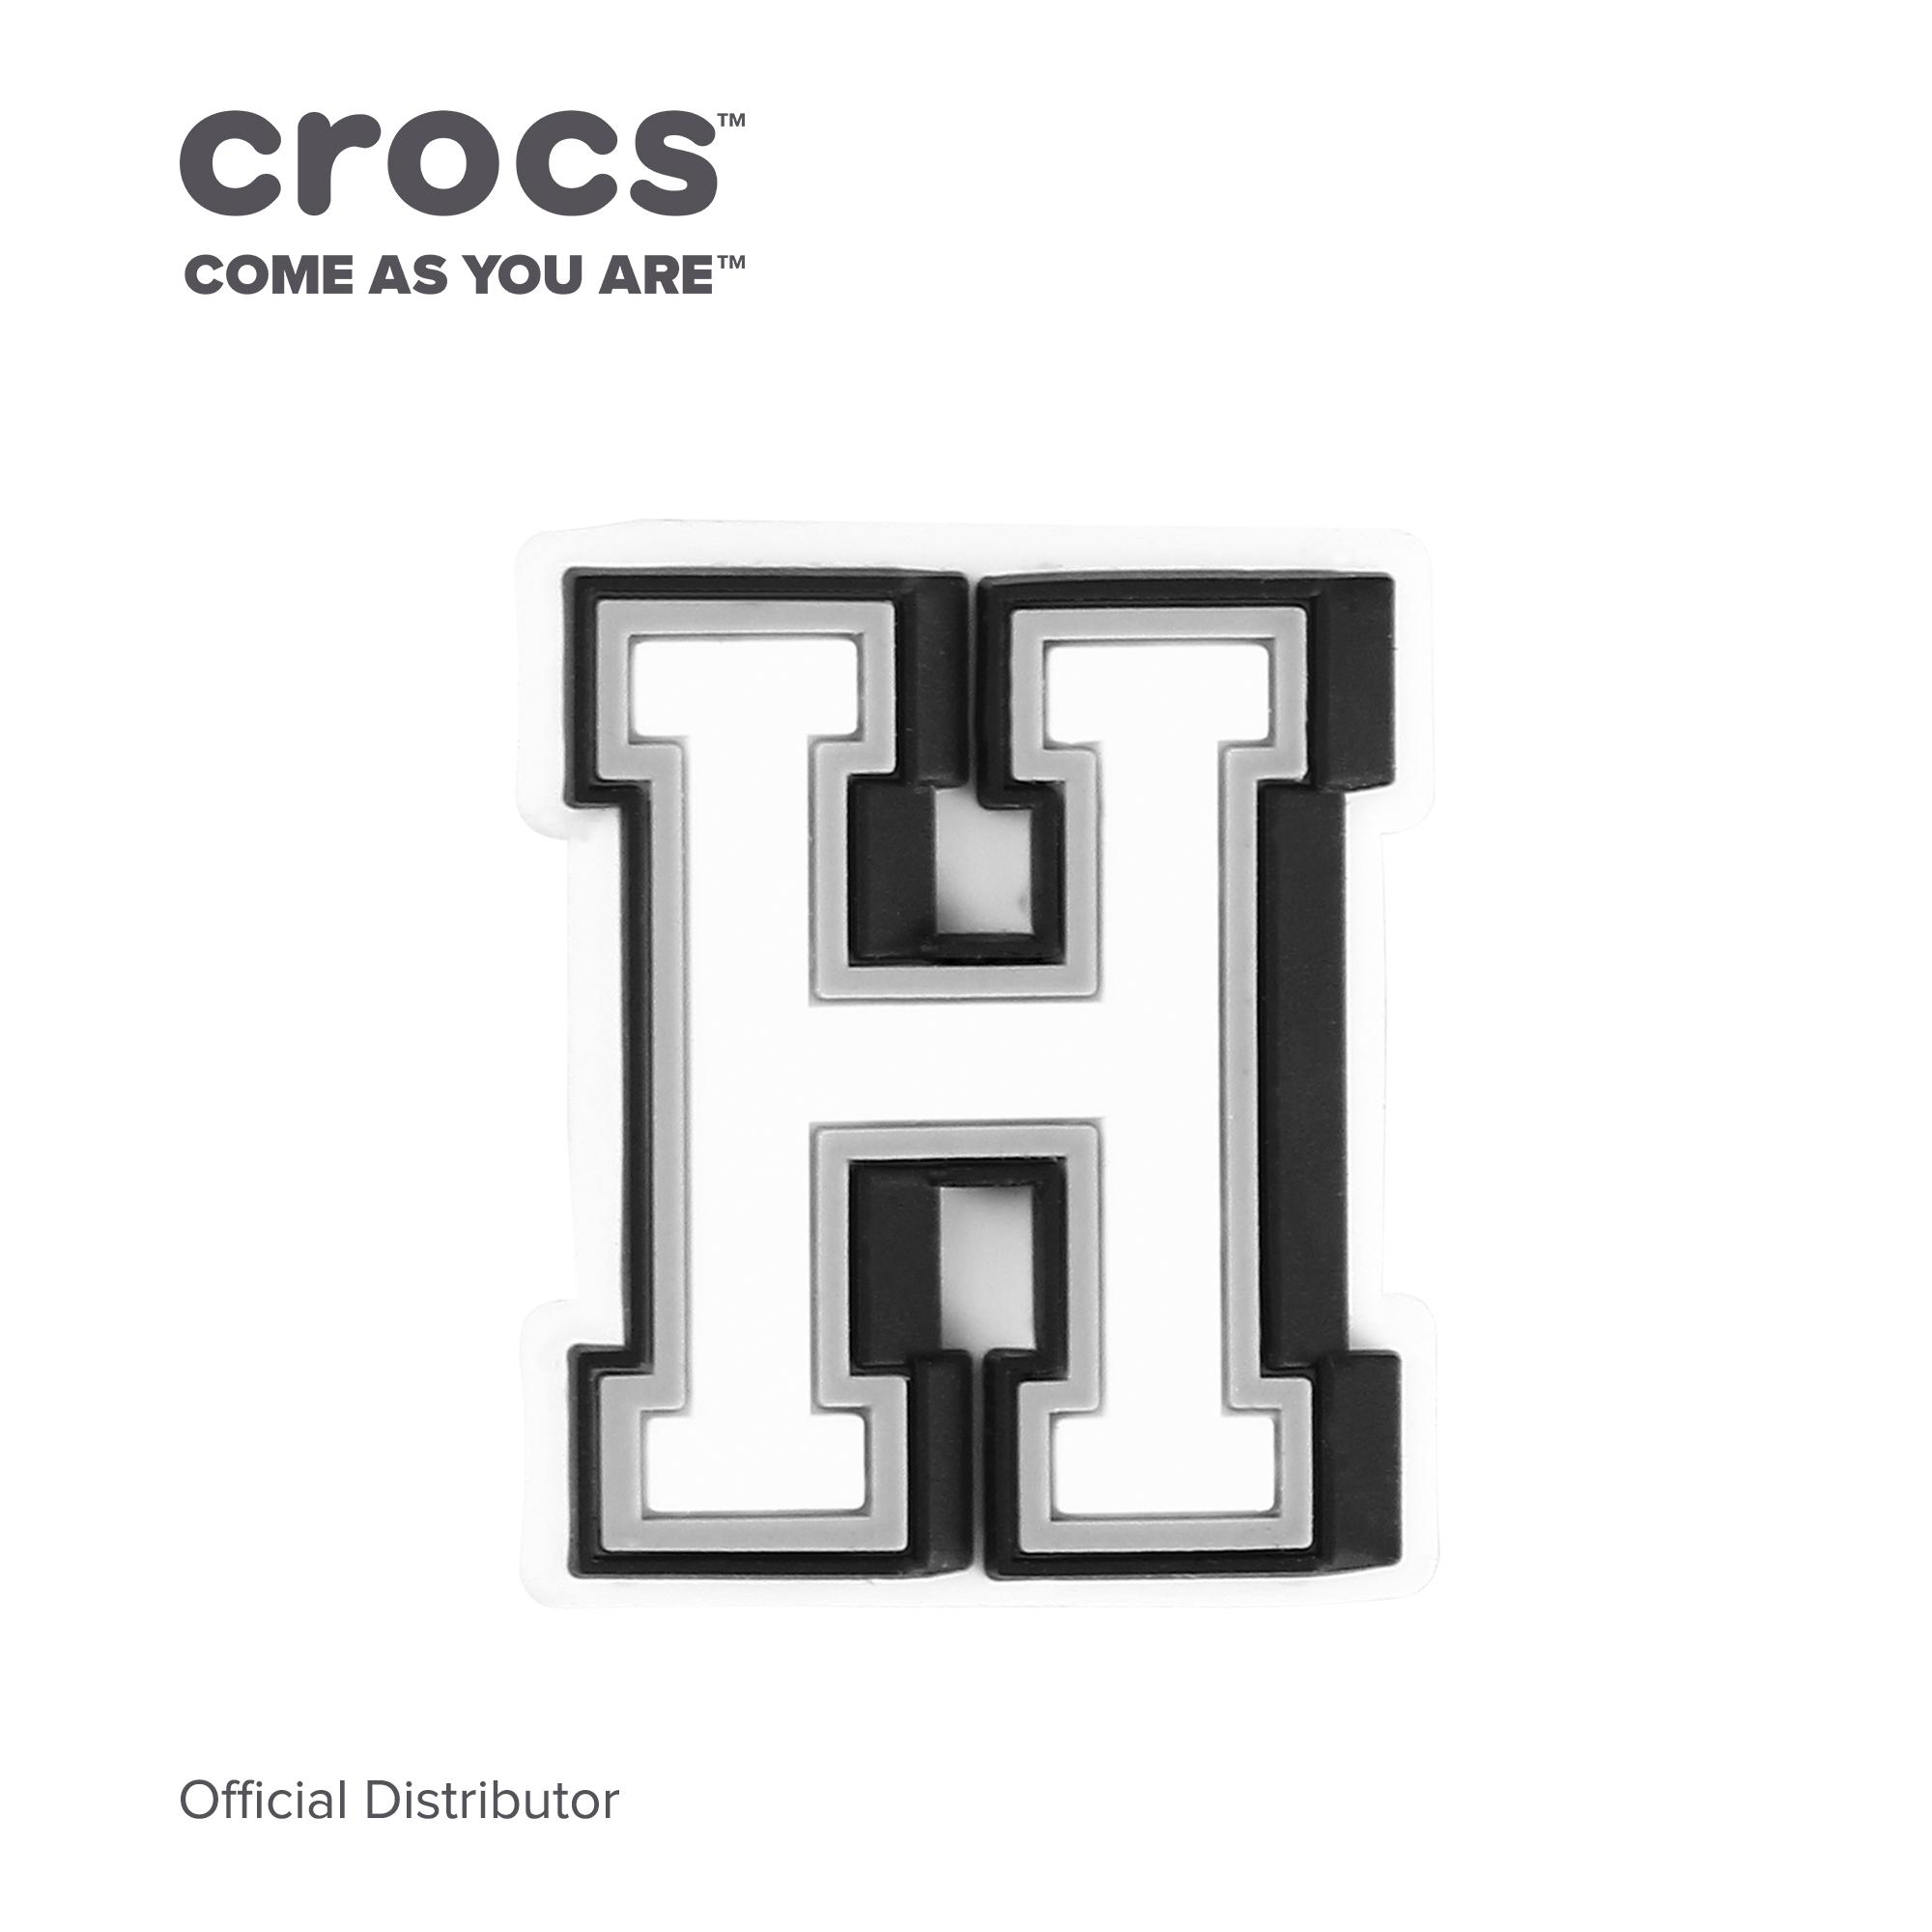 crocs accessories letters